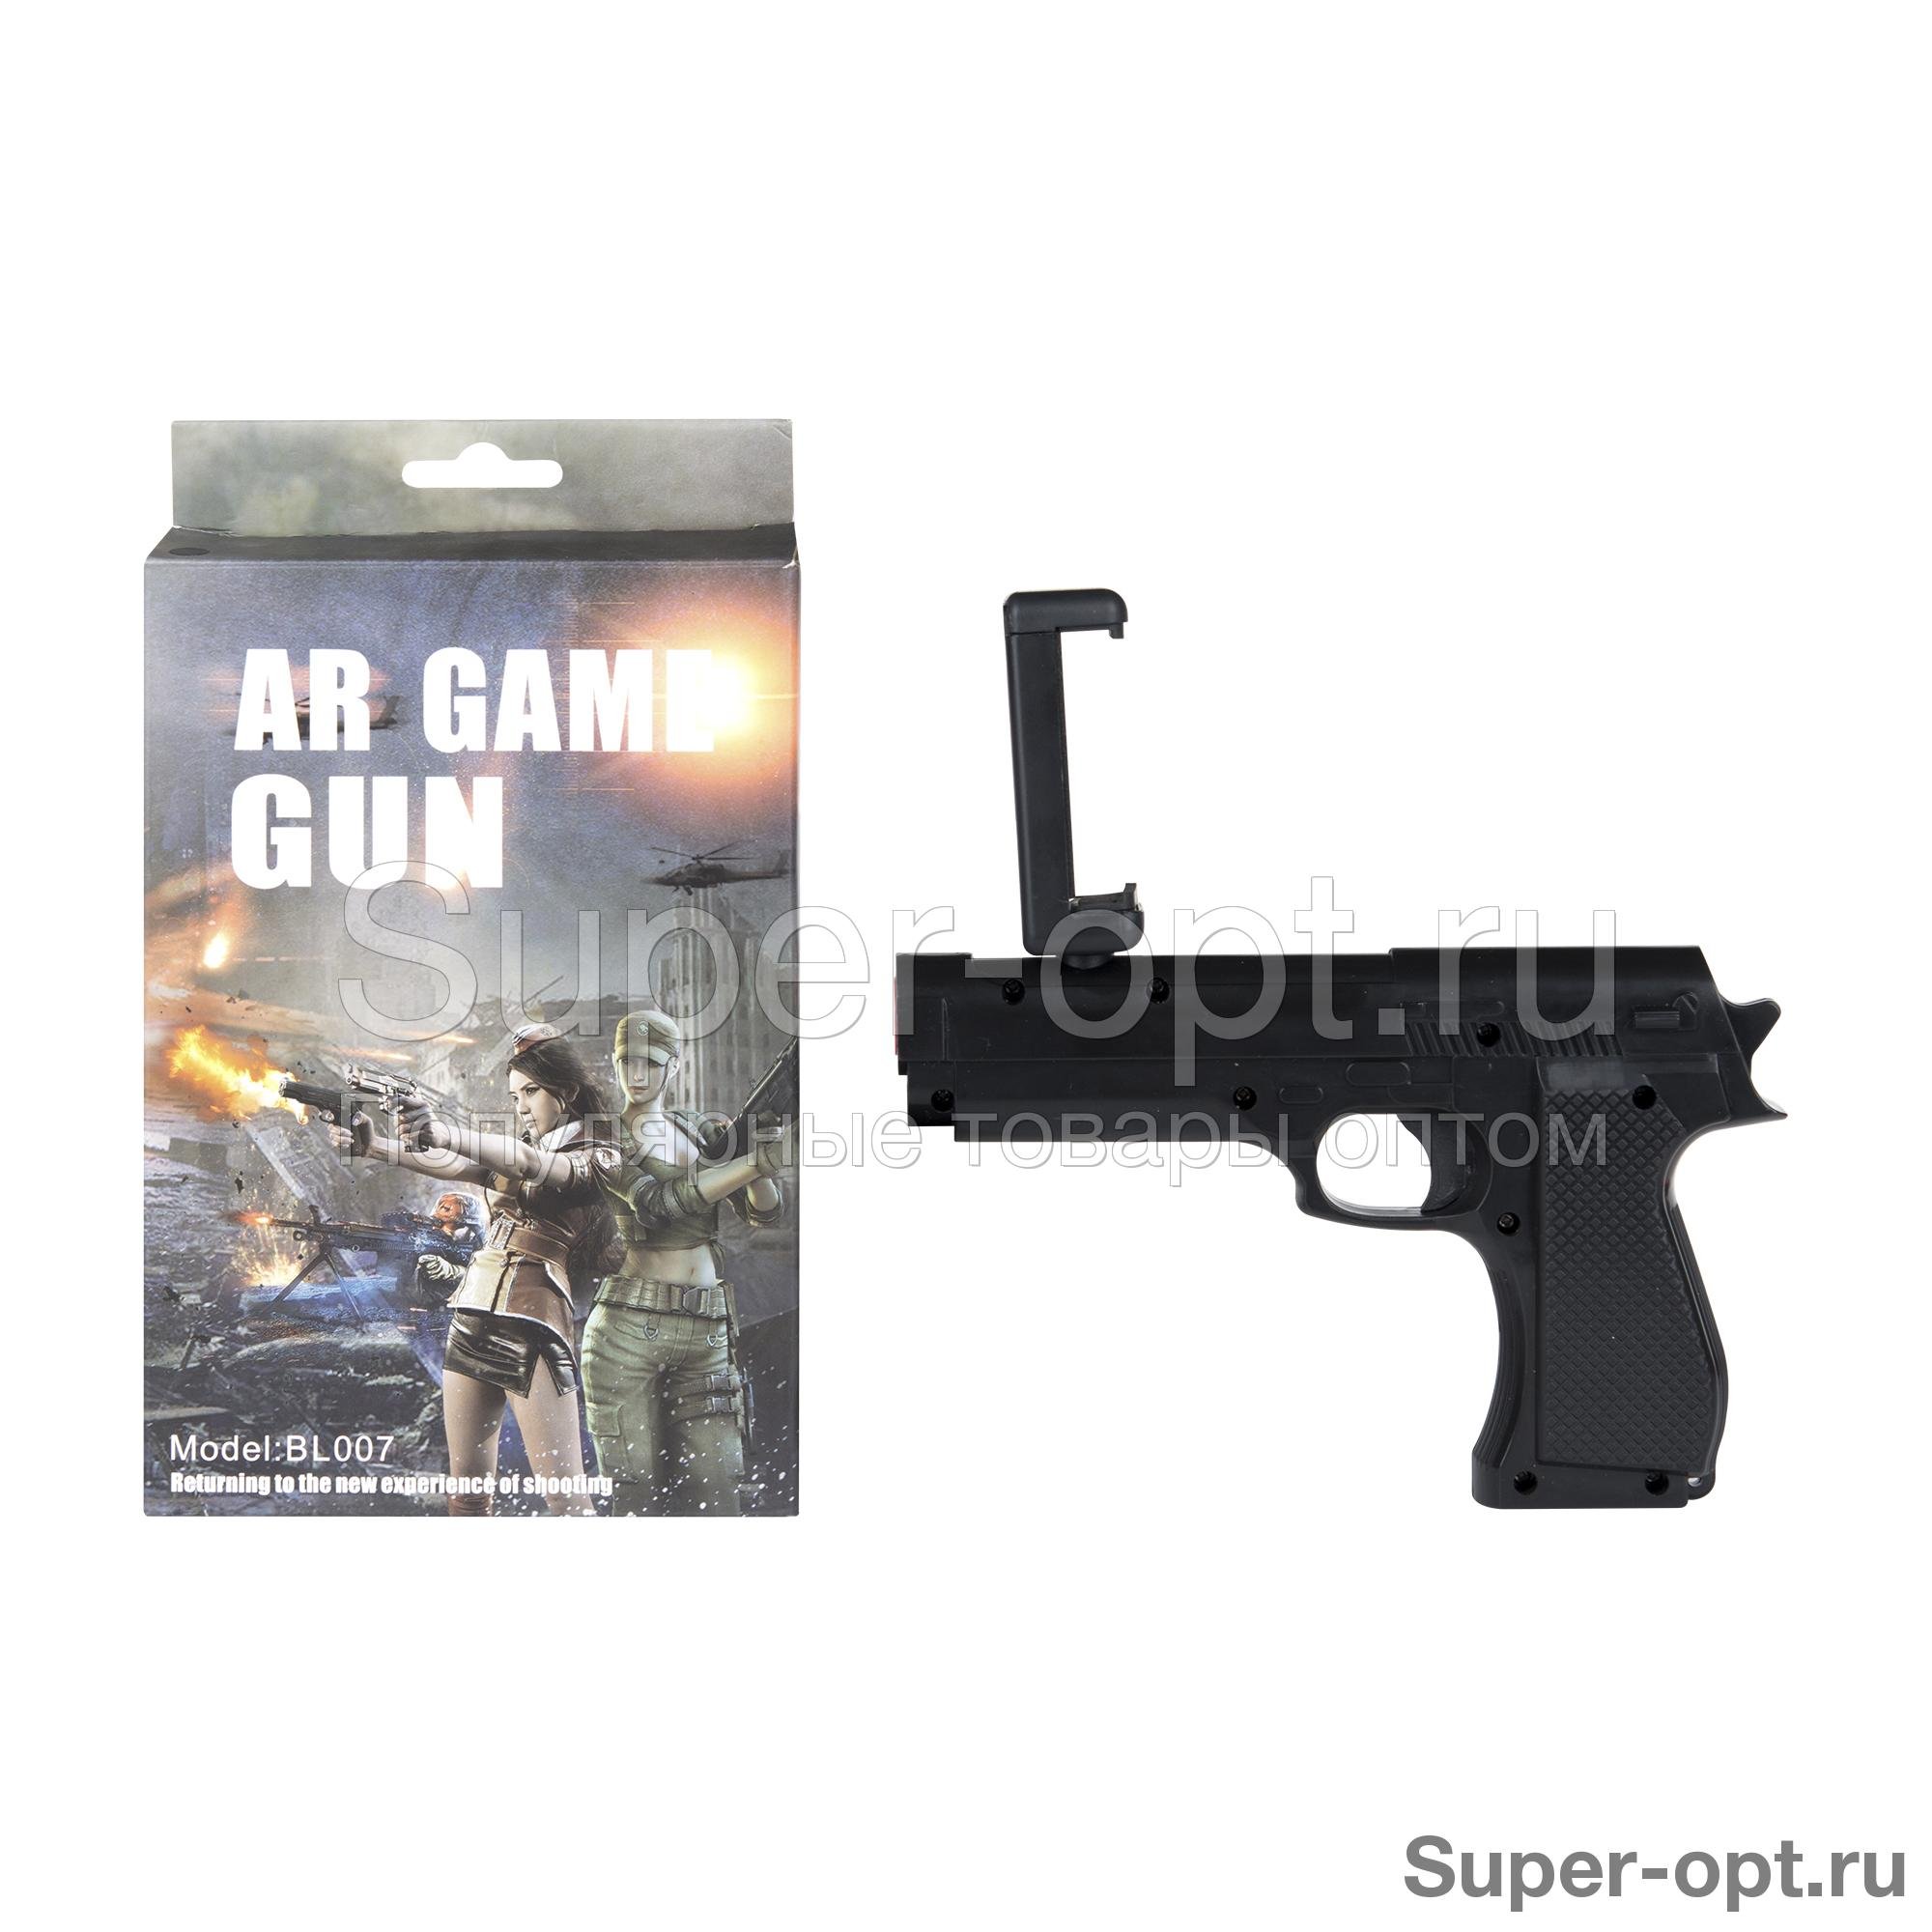 Пистолет AR Game Gun c дополненной реальностью